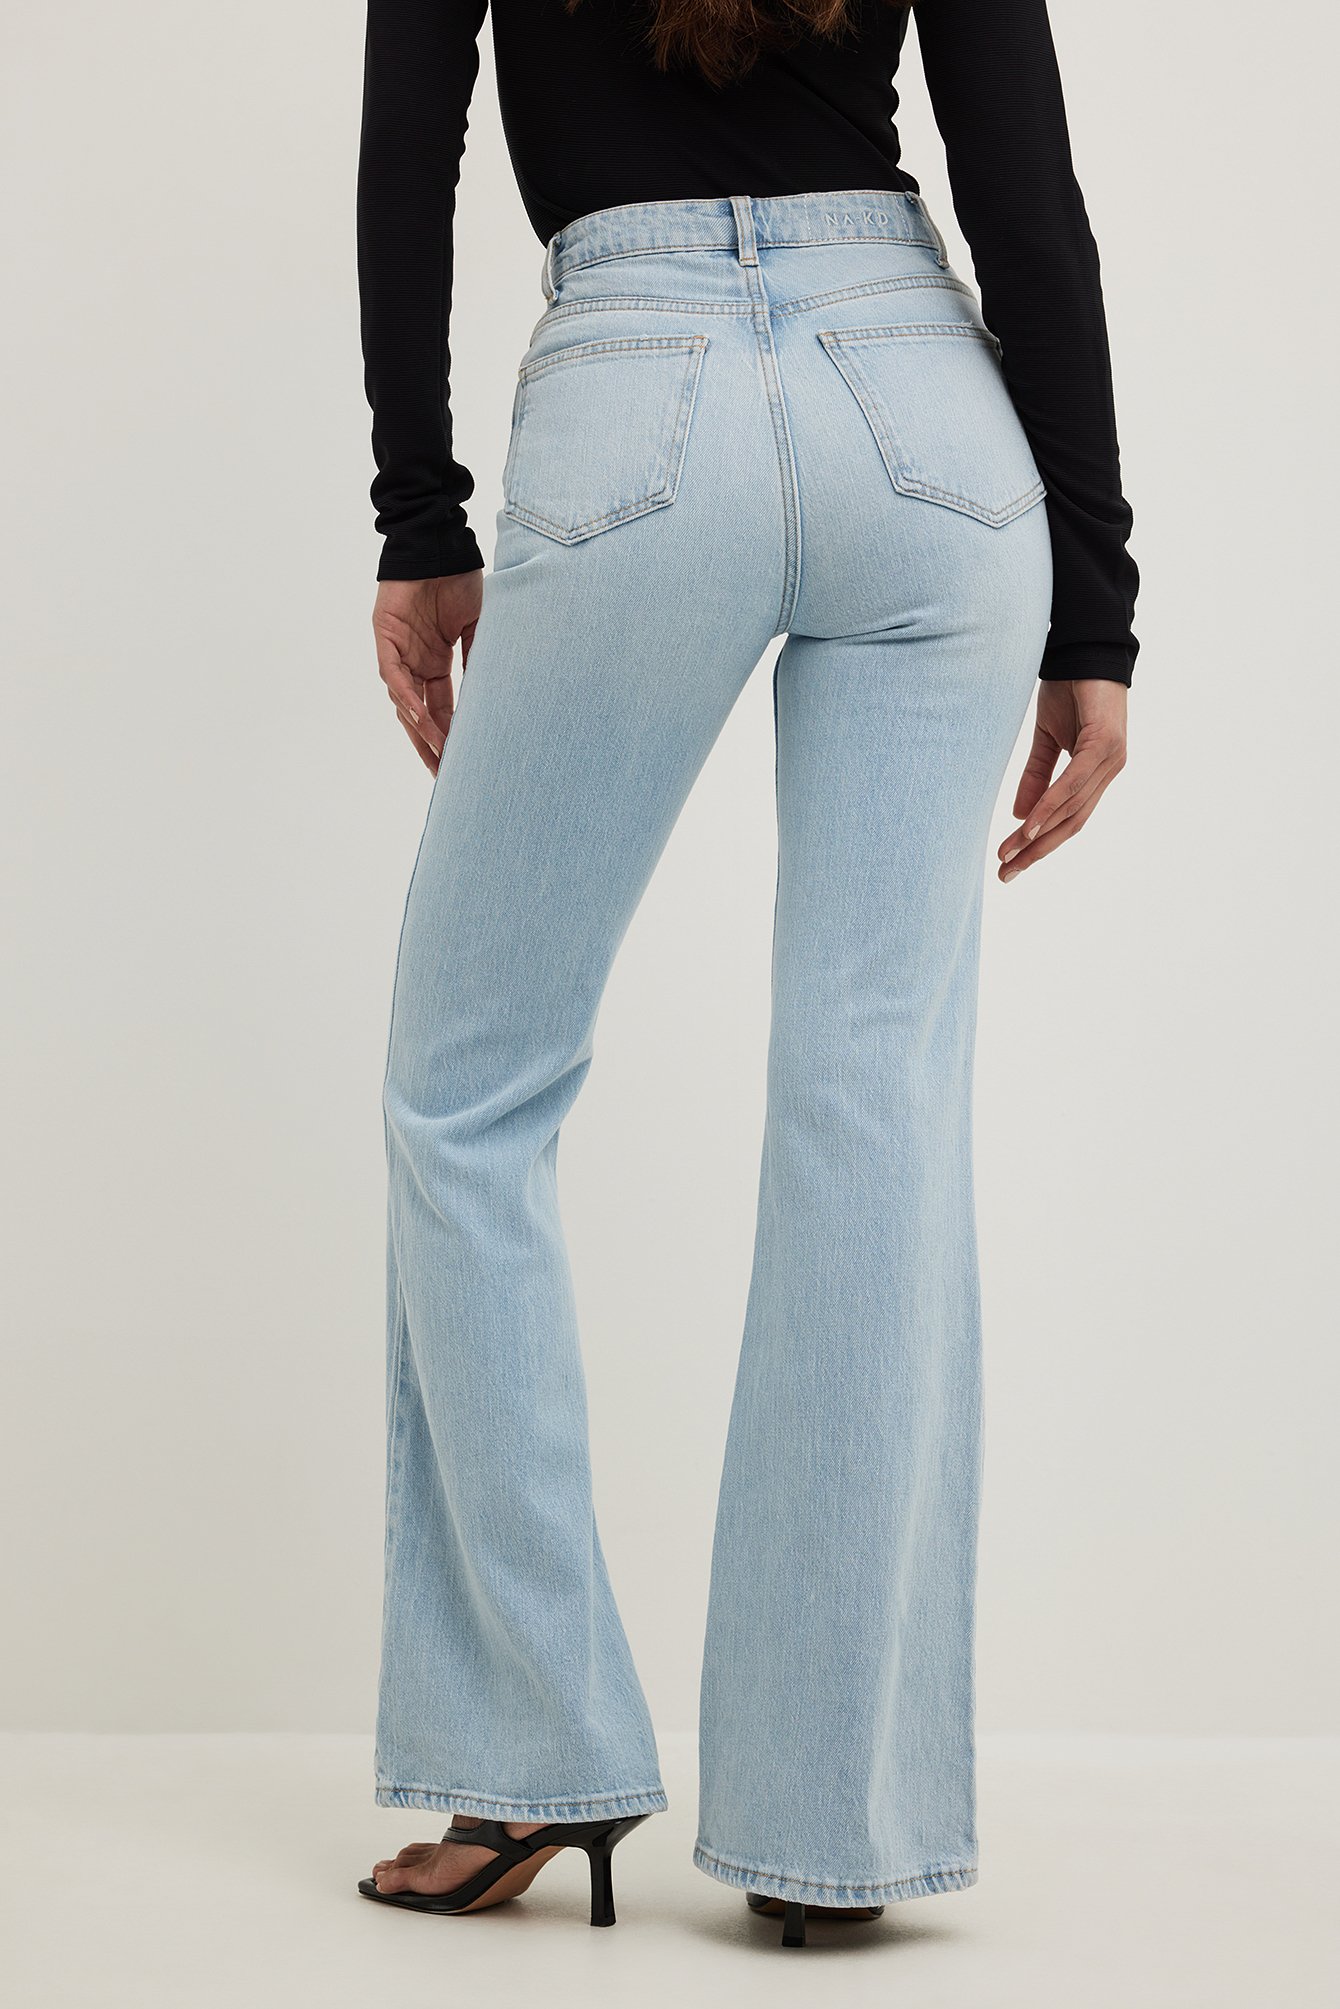 Julycc Womens Bootcut Jeans Flared Bell Bottoms Low Waist Denim Pants 